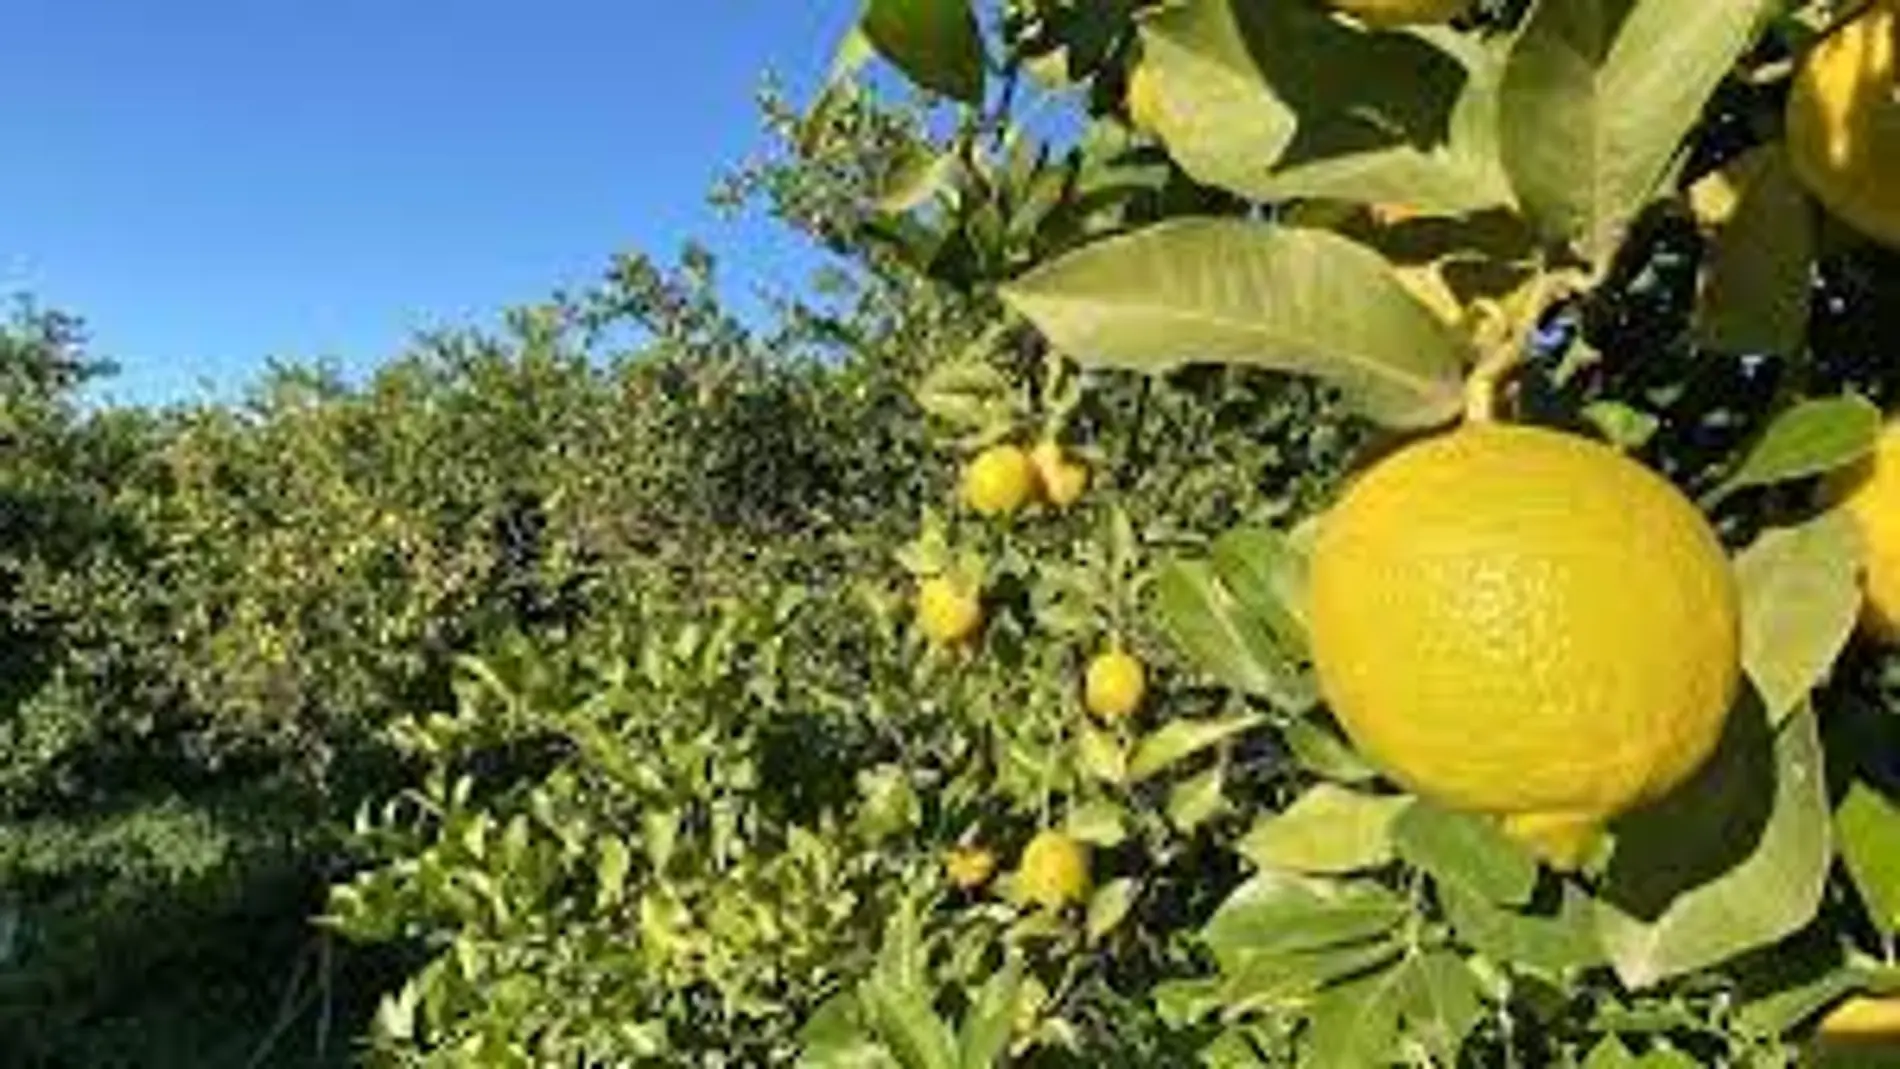 El limón murciano, en crisis por unos precios "insostenibles"